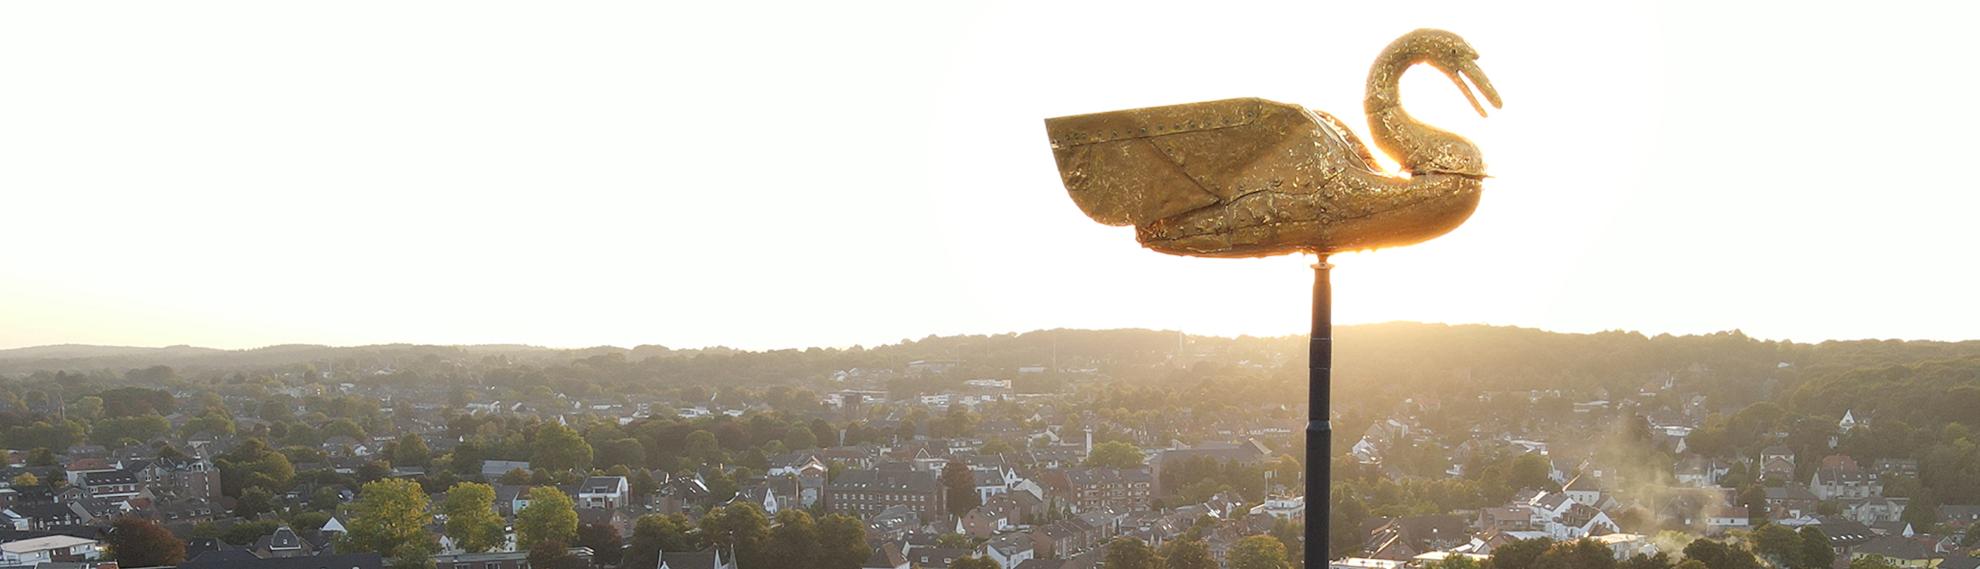 Drohnenaufnahme vom goldenen Schwan auf der Schwanenburg bei Sonnenuntergang